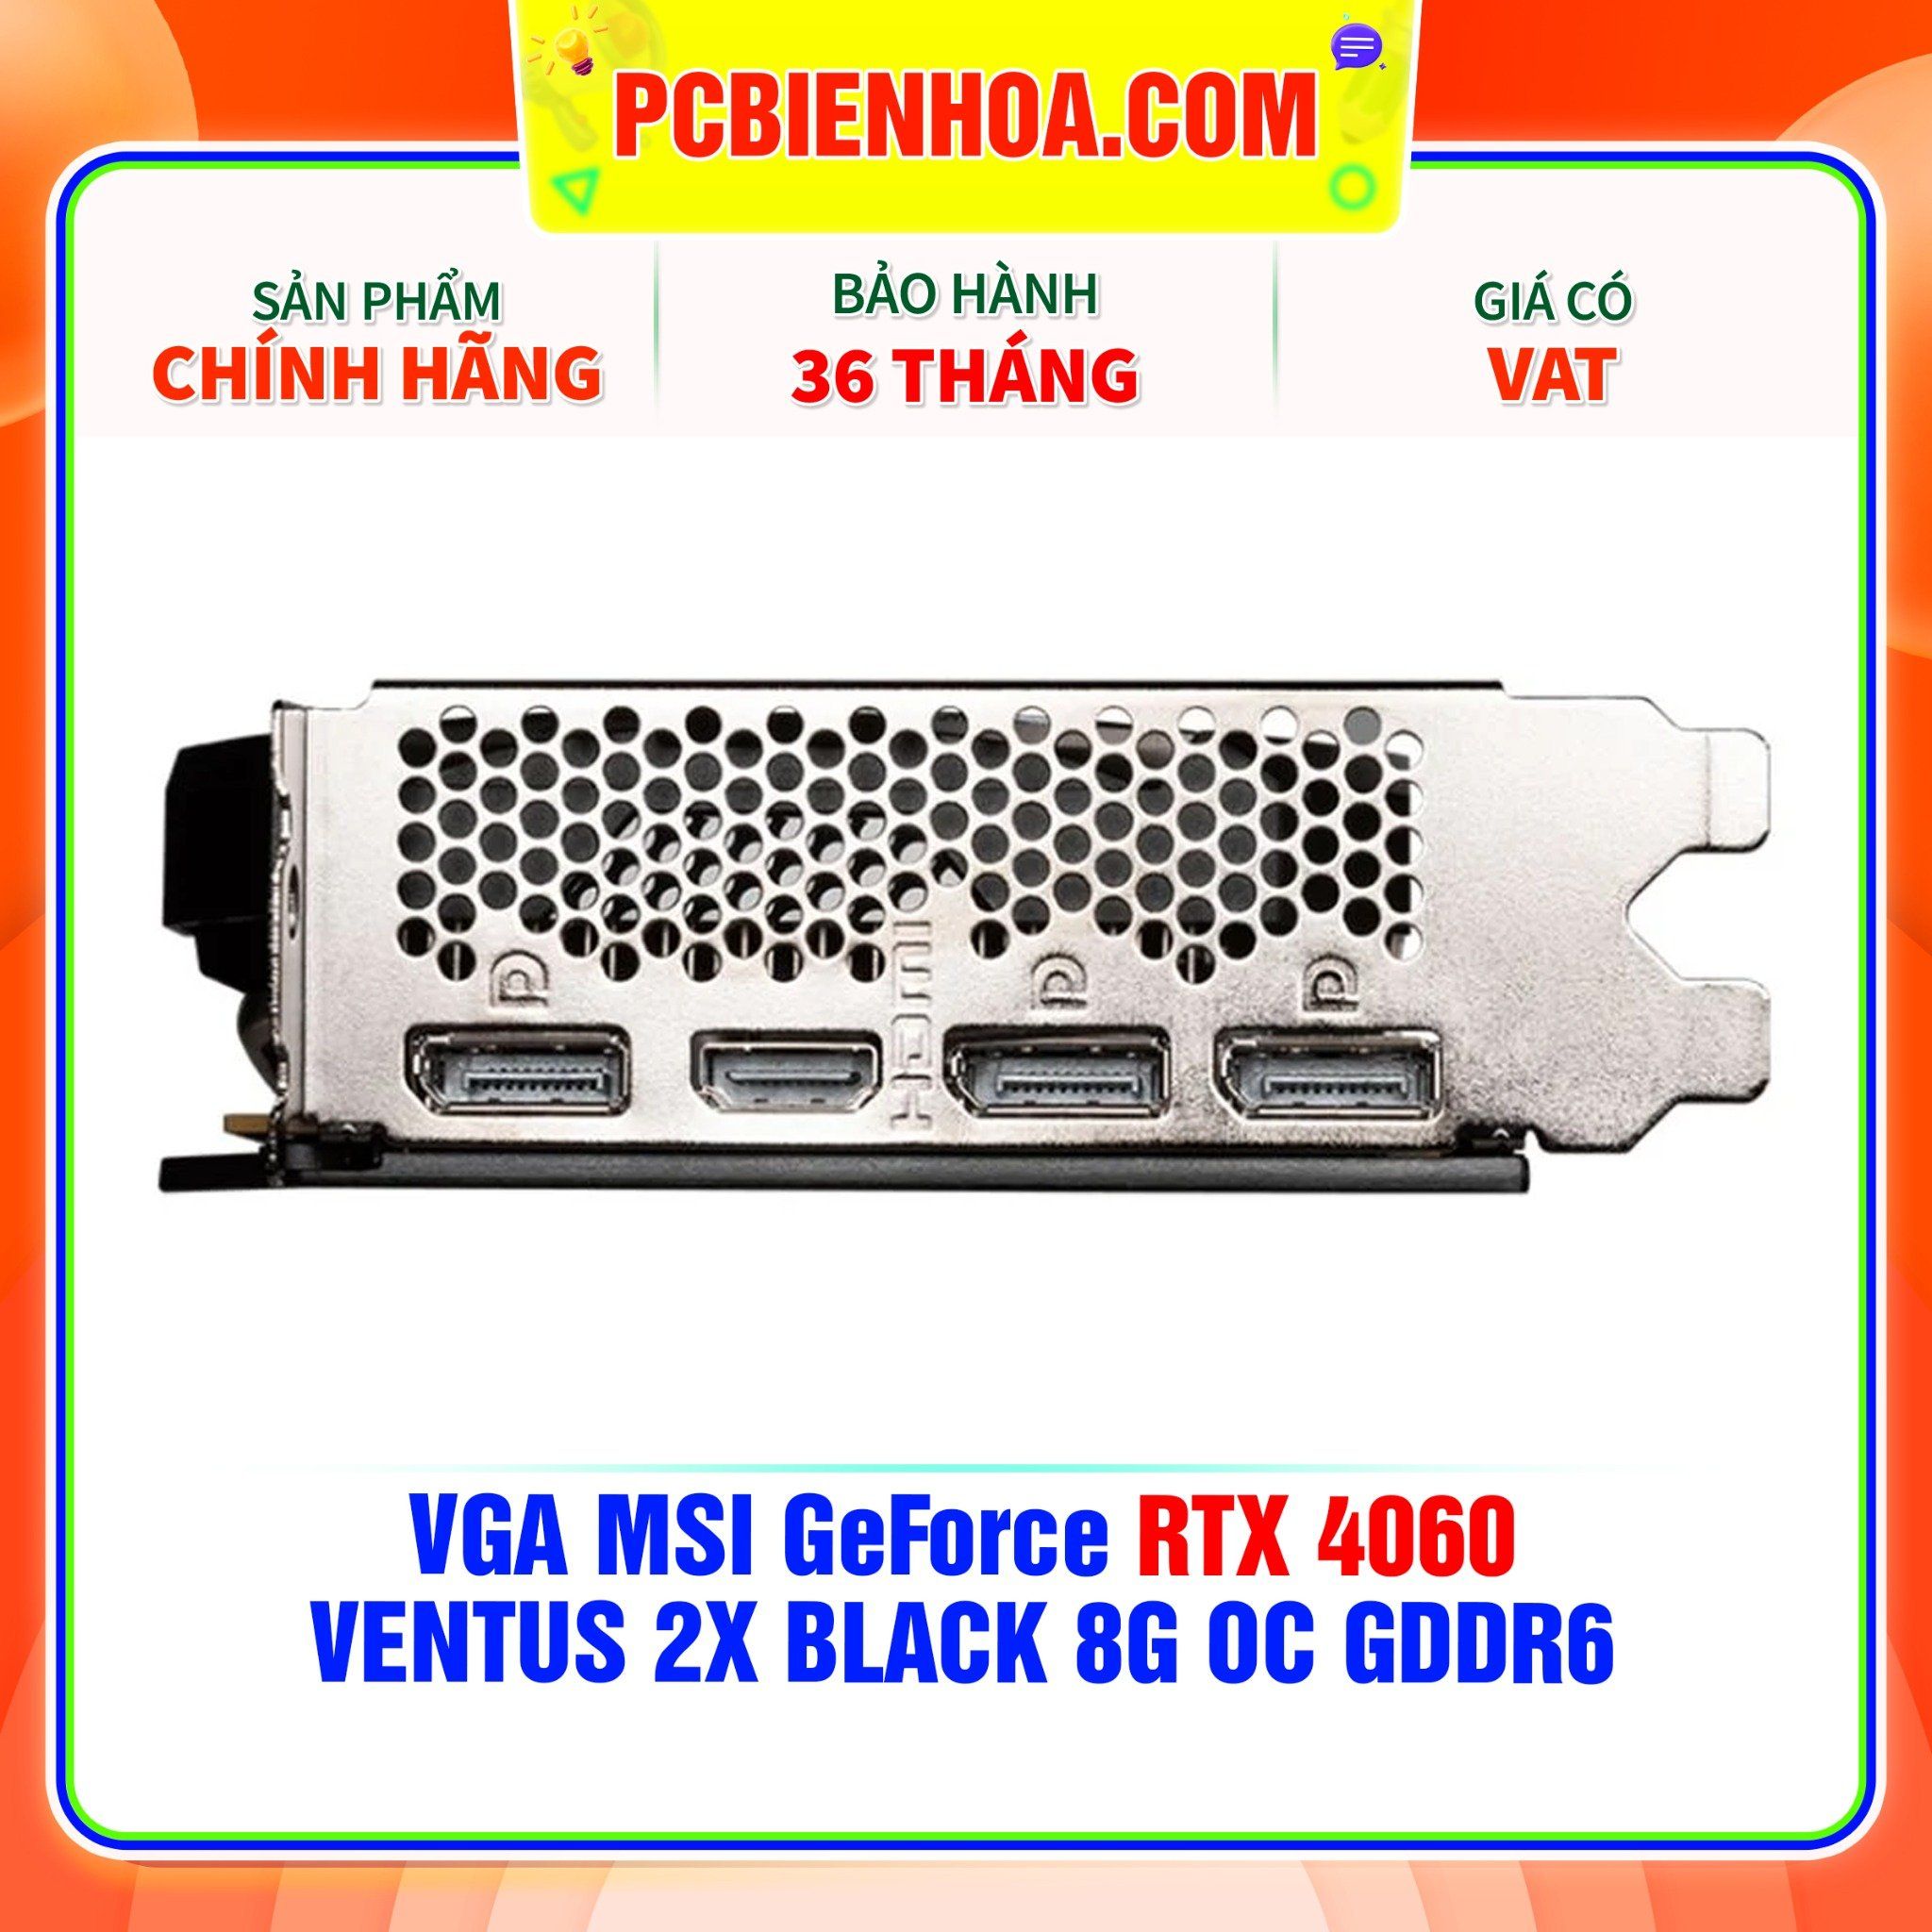  VGA MSI GeForce RTX 4060 VENTUS 2X BLACK 8G OC GDDR6 